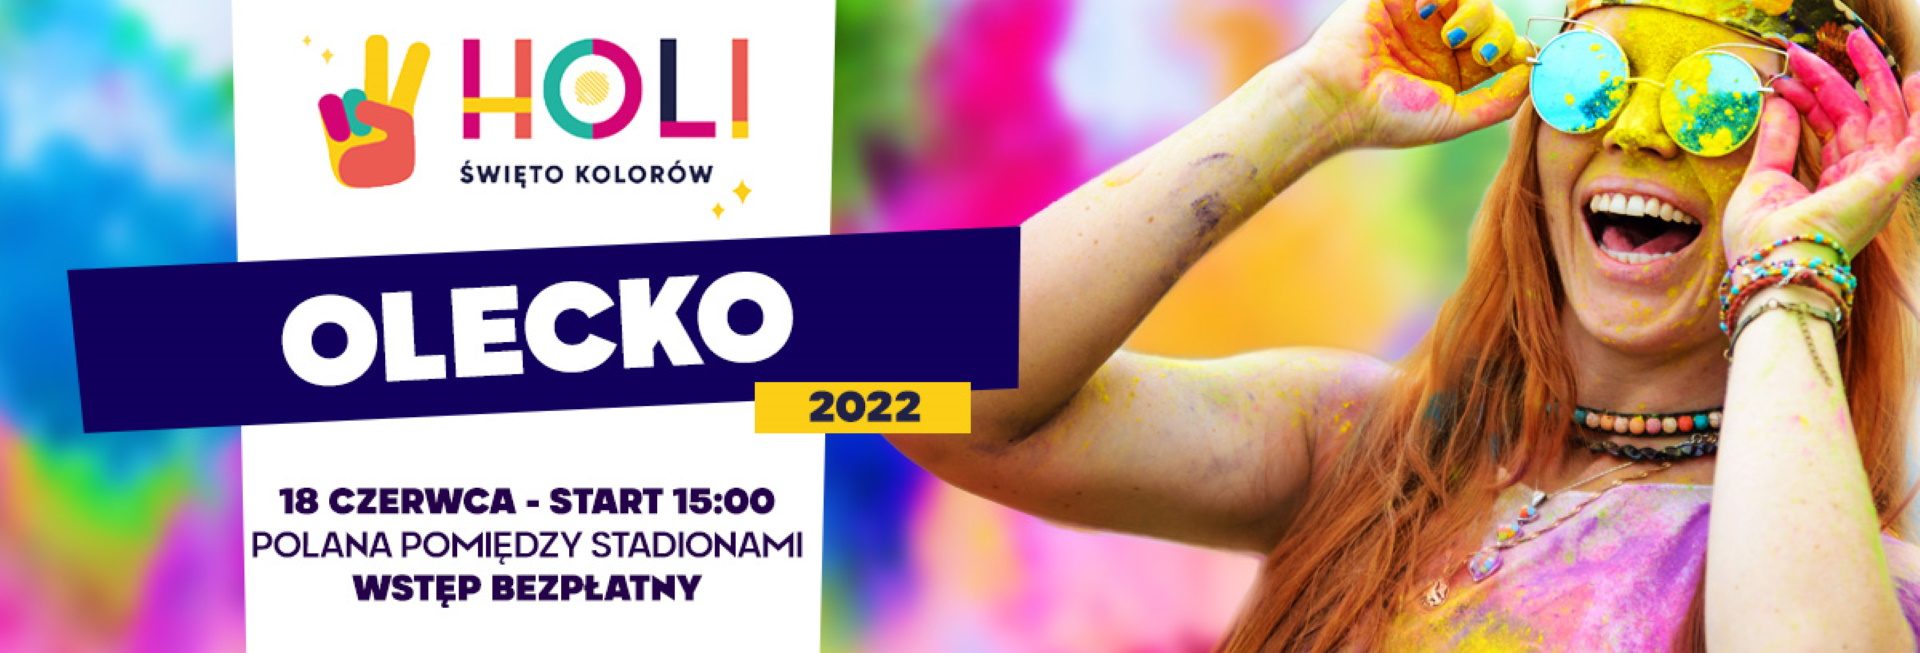 Plakat graficzny zapraszający do Olecka na Holi Święto Kolorów w Olecku 2022.